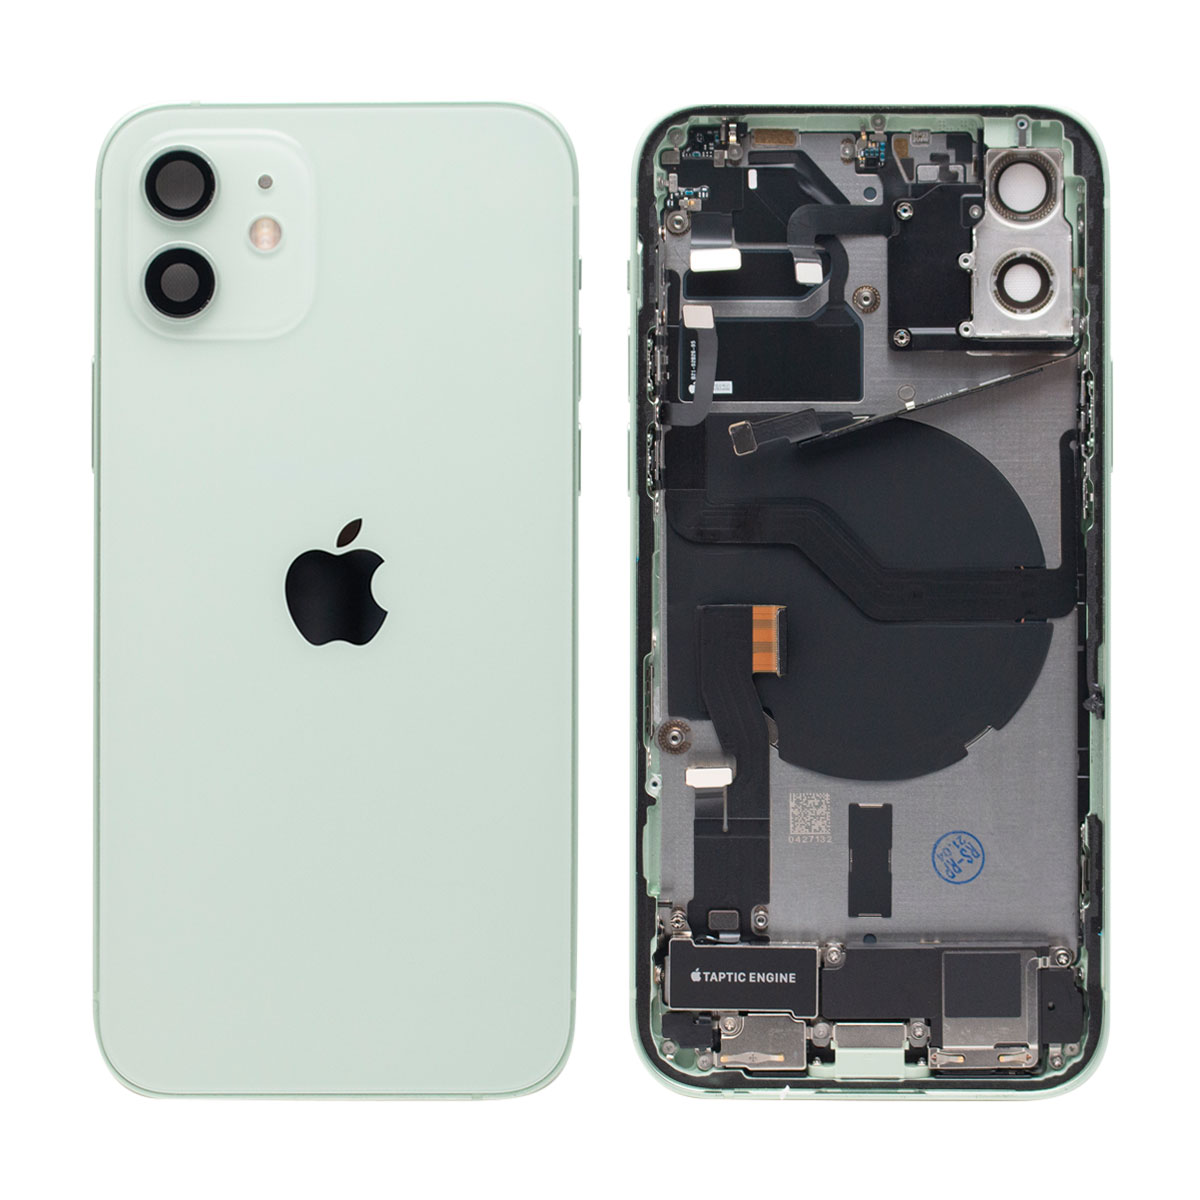 Remplacement Vitre tactile iPhone 12 / Pro / Max / Mini